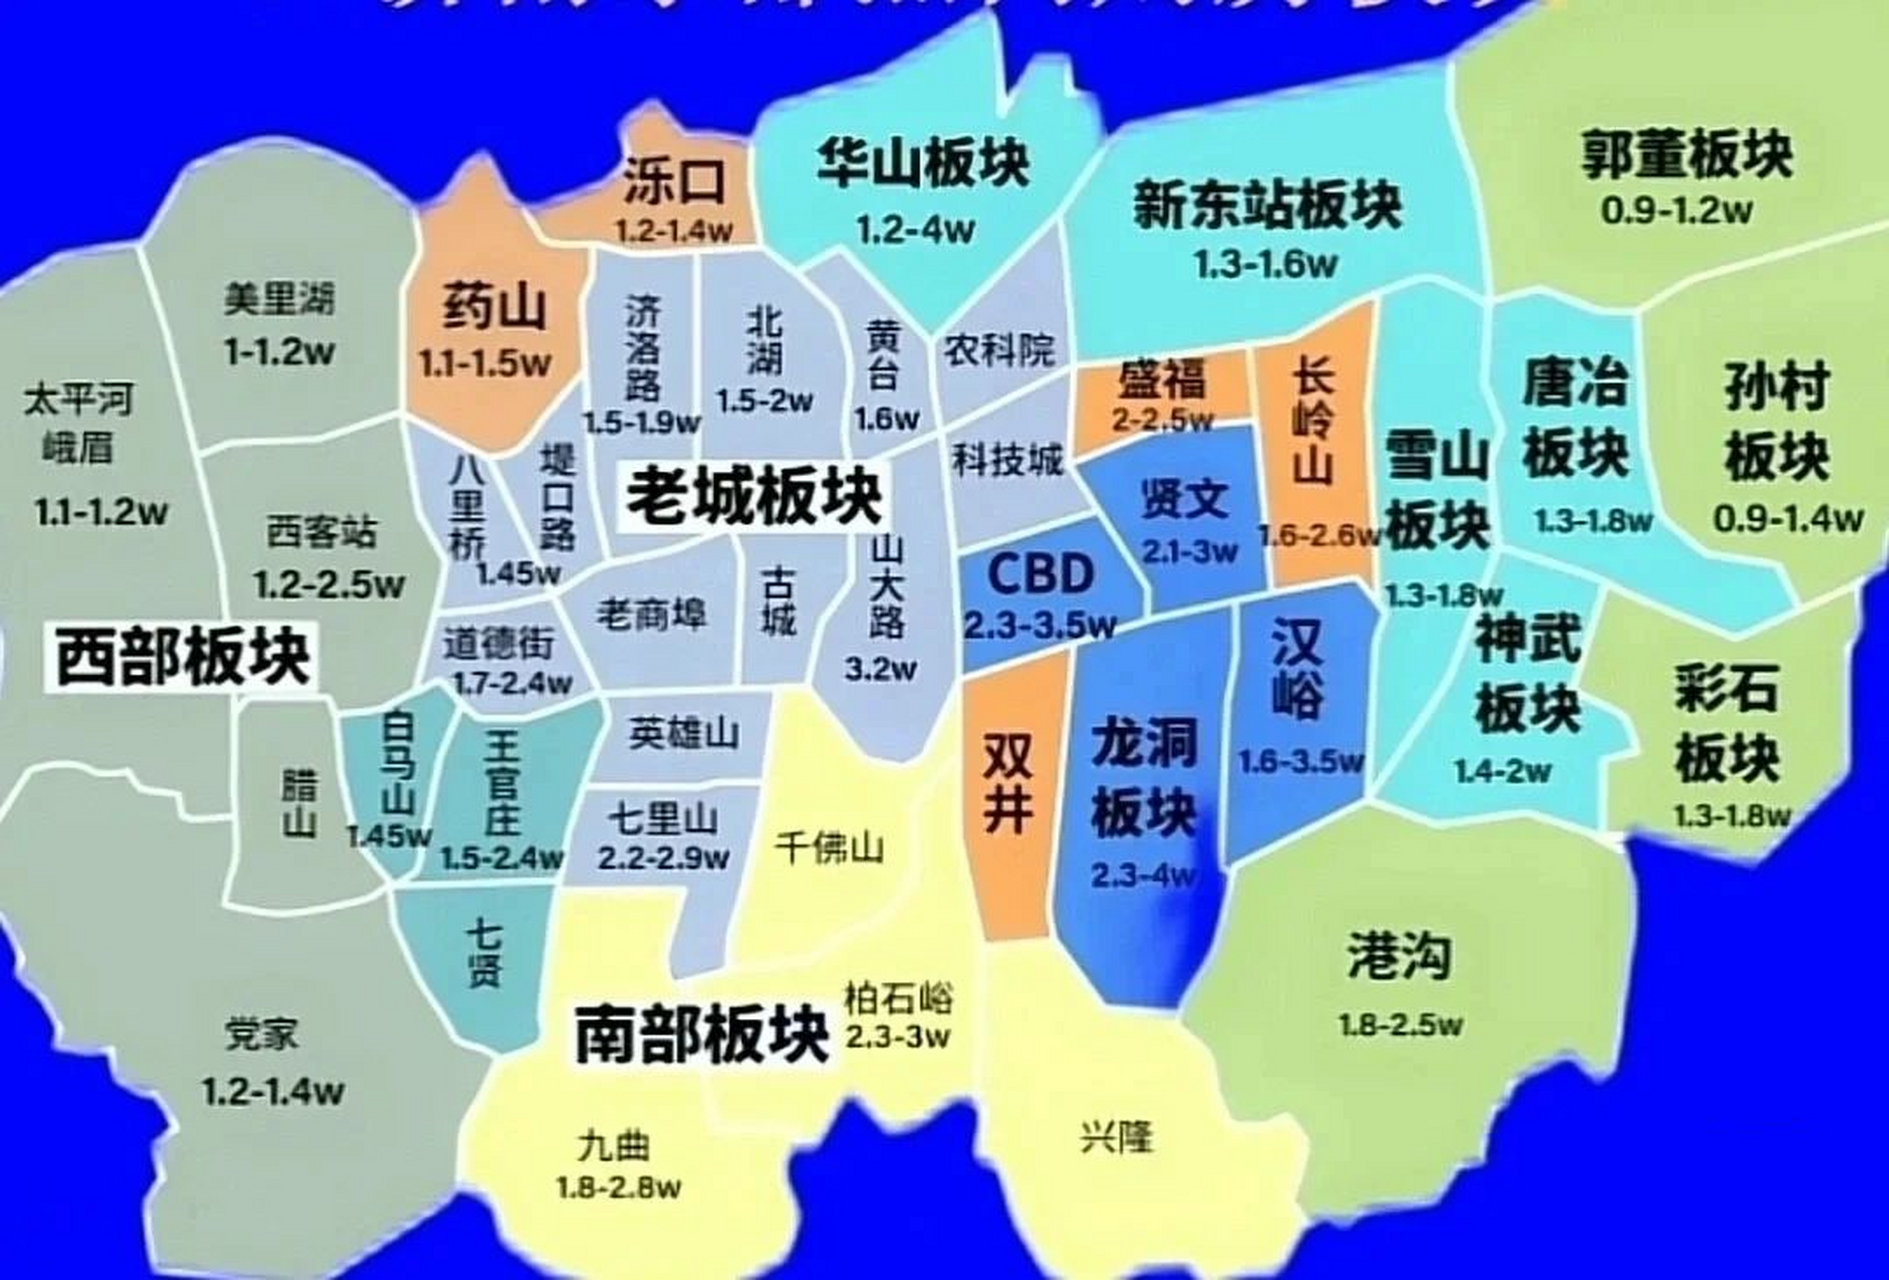 济南五区分布图地图图片